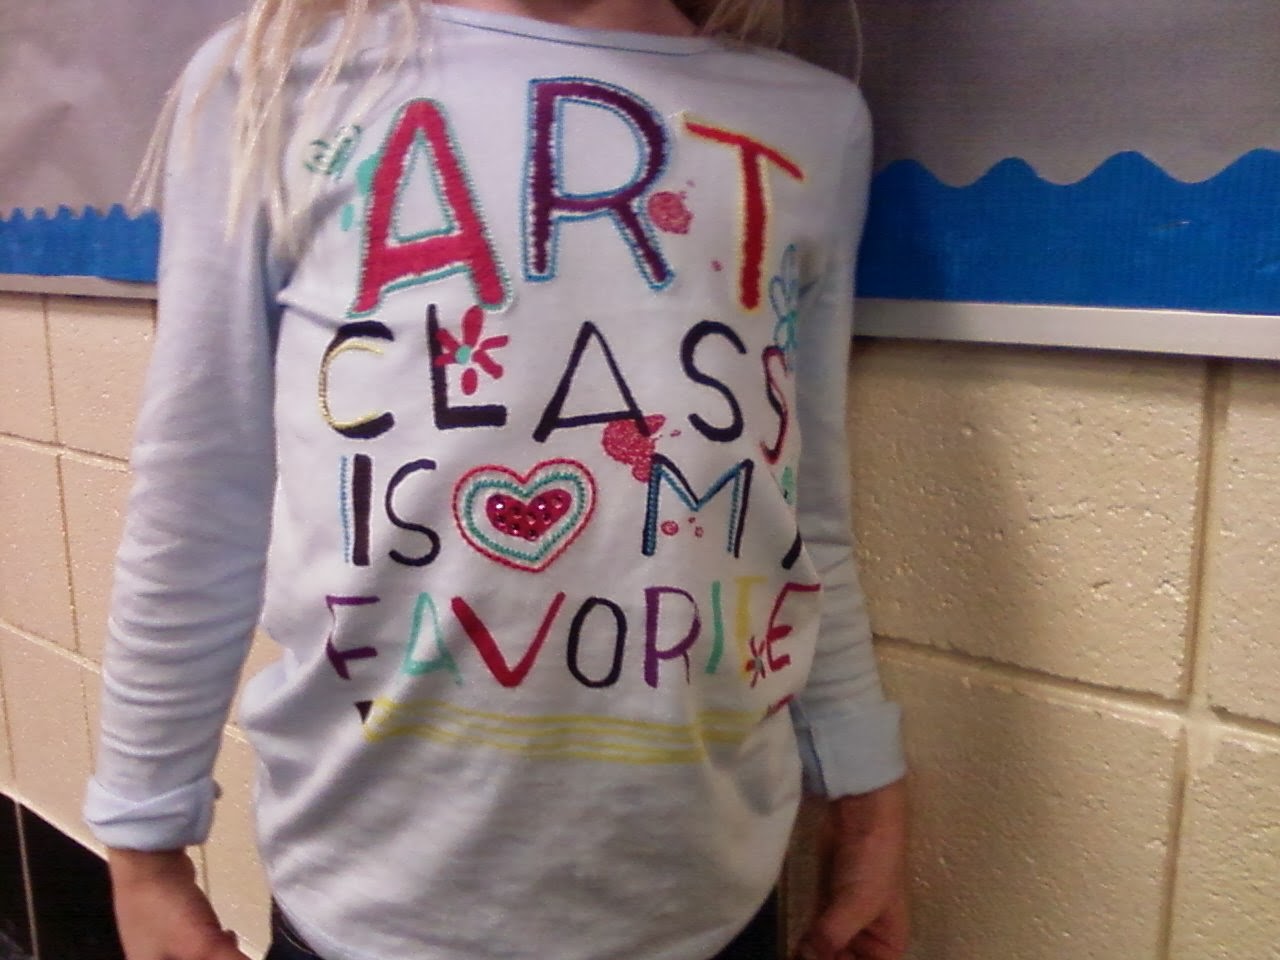 ART CLASS IS MY FAVORITE!